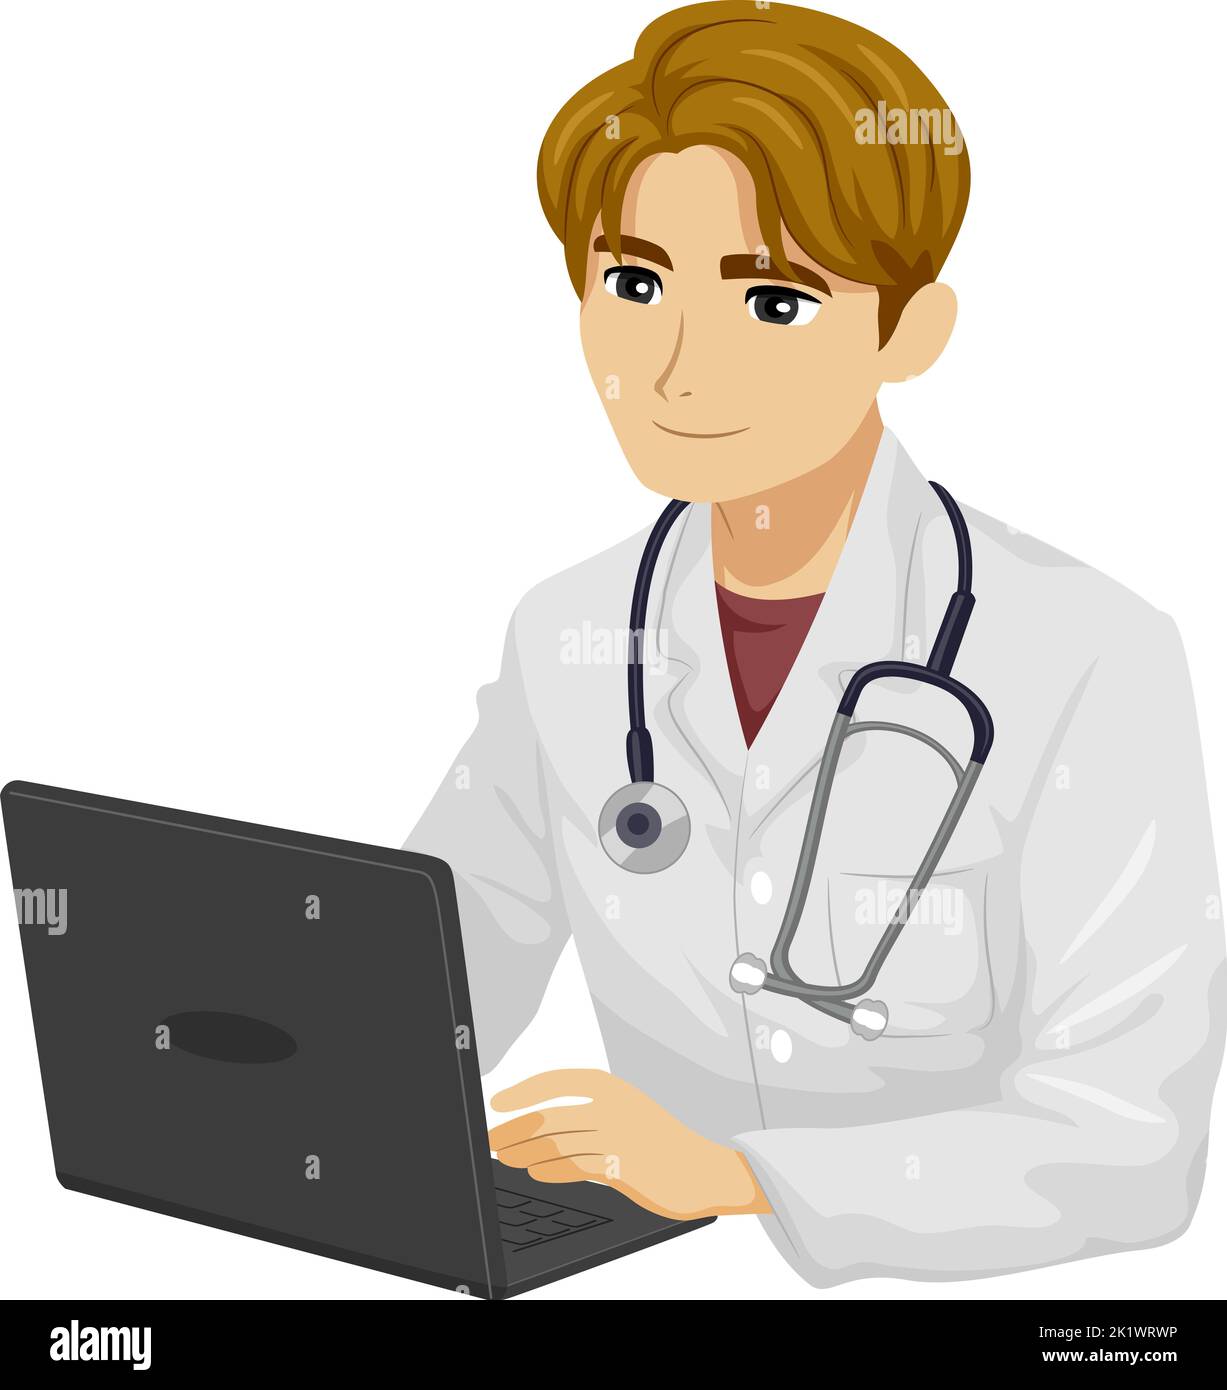 Illustration eines jungen Arztes, der weißen Kleides mit Stethoskop trägt, der an seinem Hals aufgehängt und mit einem Laptop verwendet wird Stockfoto